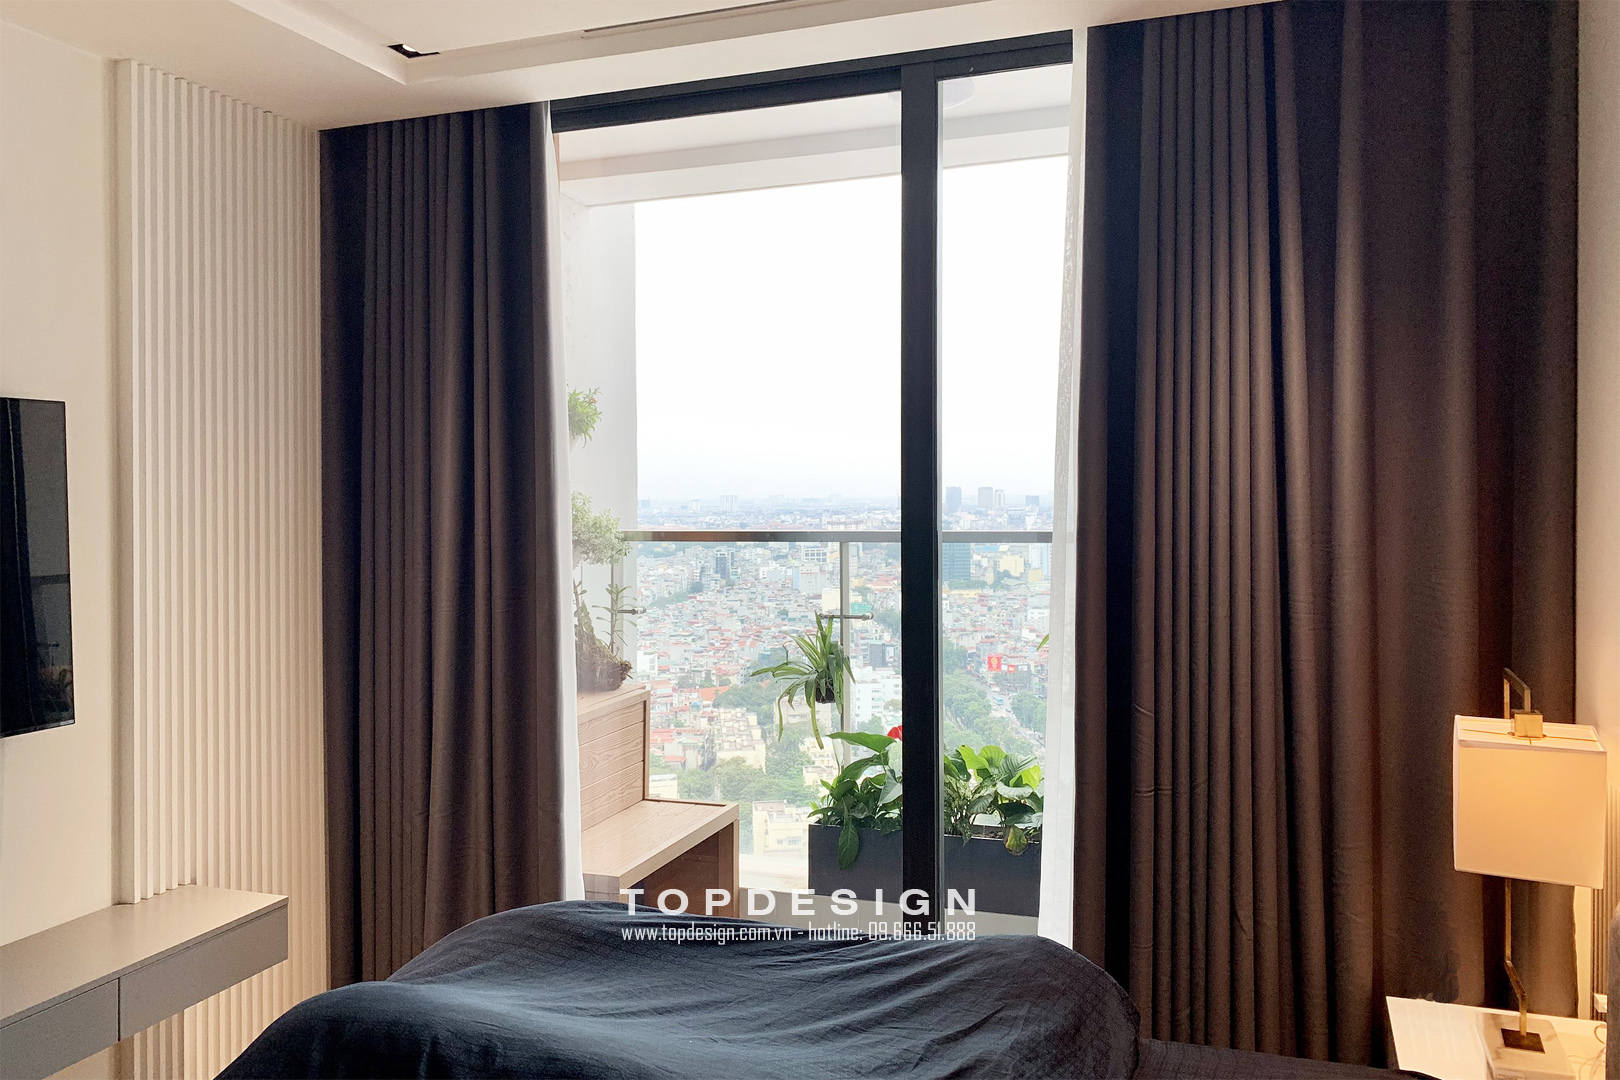 Mẫu nội thất sang trọng cho căn hộ Vinhomes đẹp hiện đại cao cấp - Topdesign phòng ngủ